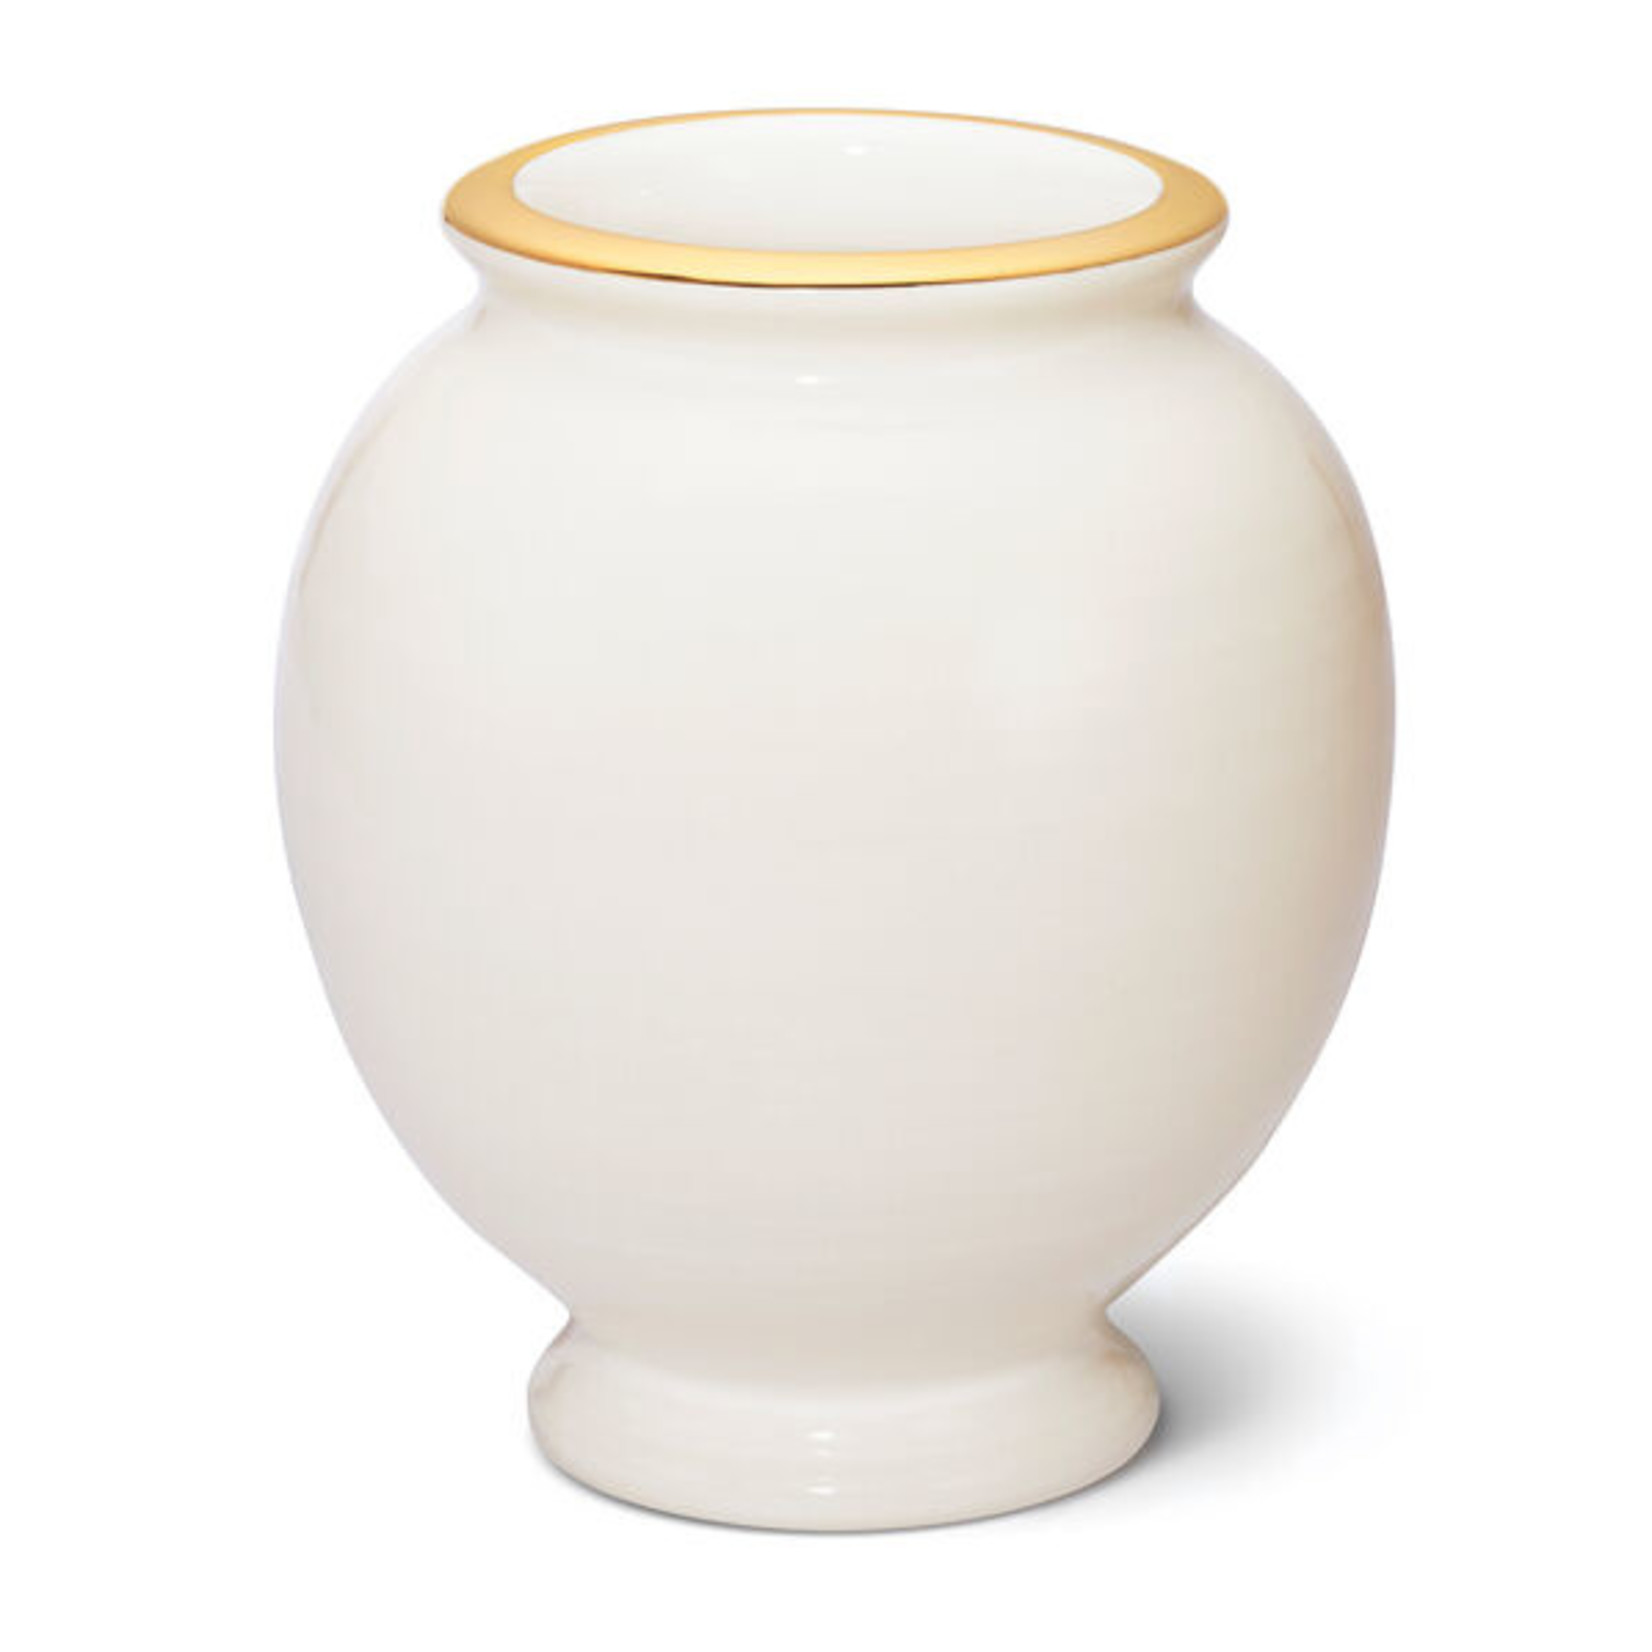 Aerin Siena Vases